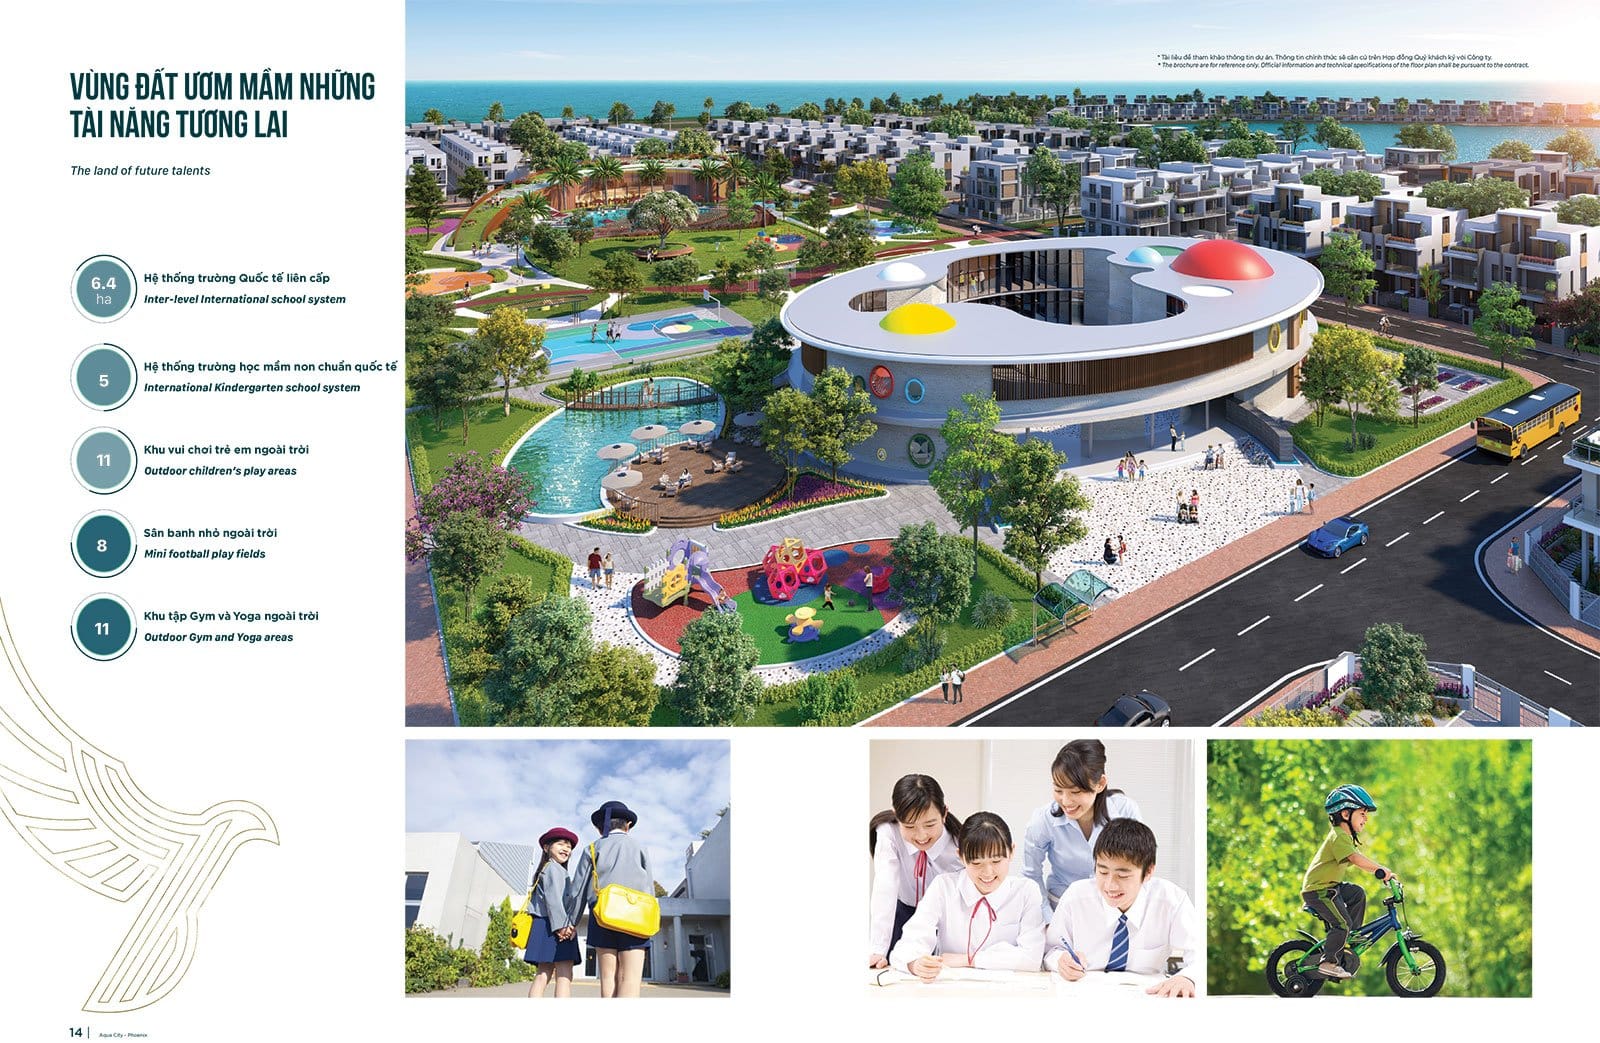 Tiện ích trường học nơi ươm mầm những tài năng tương lai tại Đảo Phượng Hoàng Aqua City.